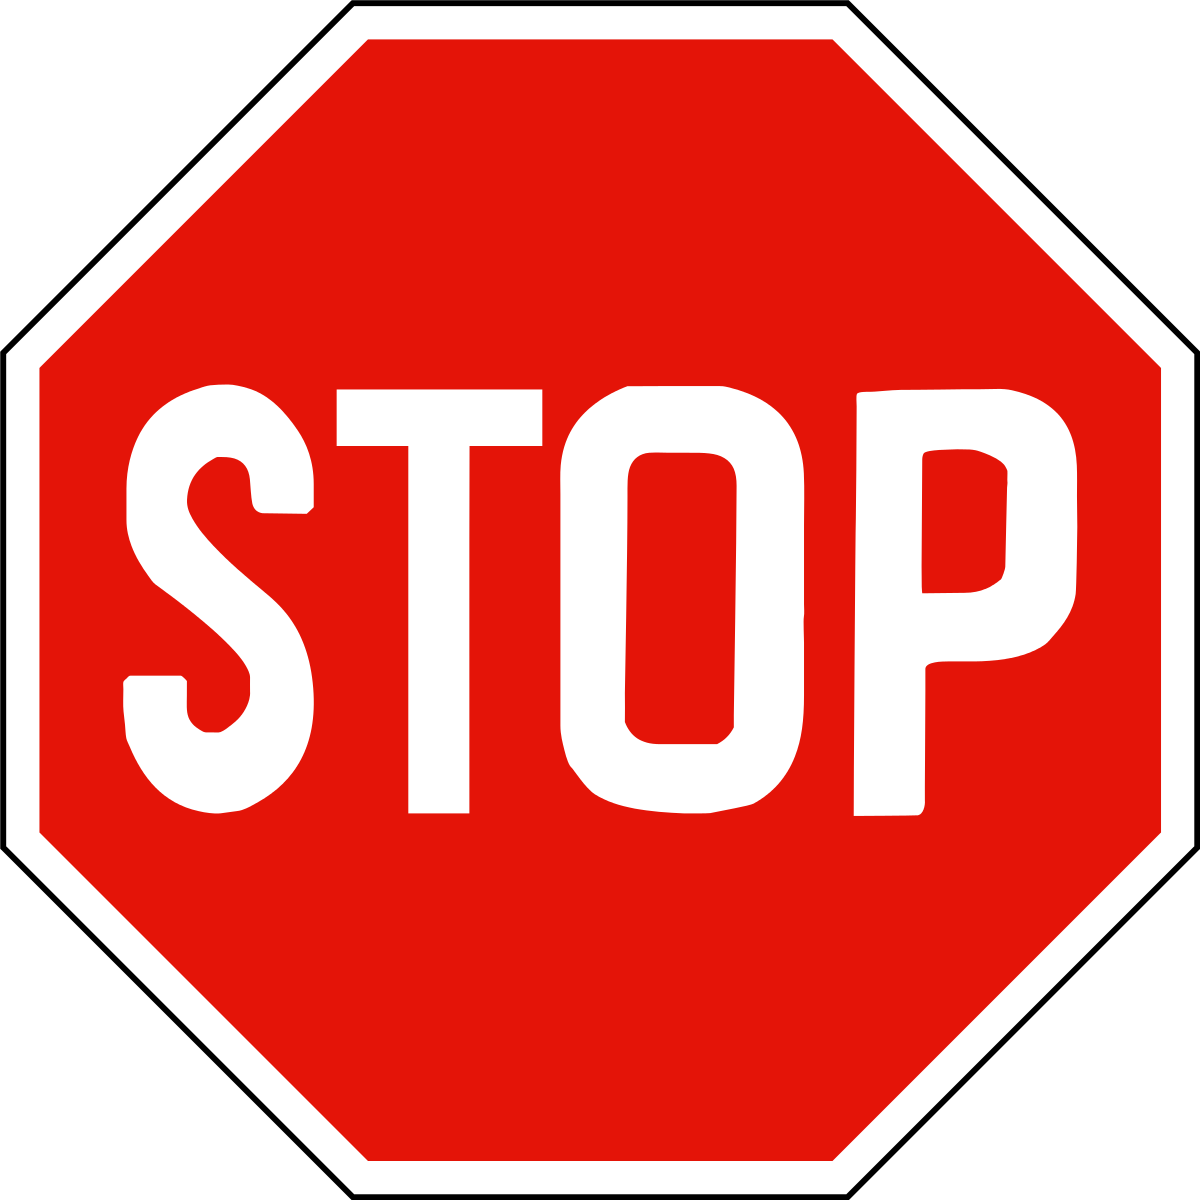 Включи двигаться стоп. Знак «стоп». Дорожный знак stop. Дорожные знаки для детей стоп. Дорожгый знак стоп для дети.